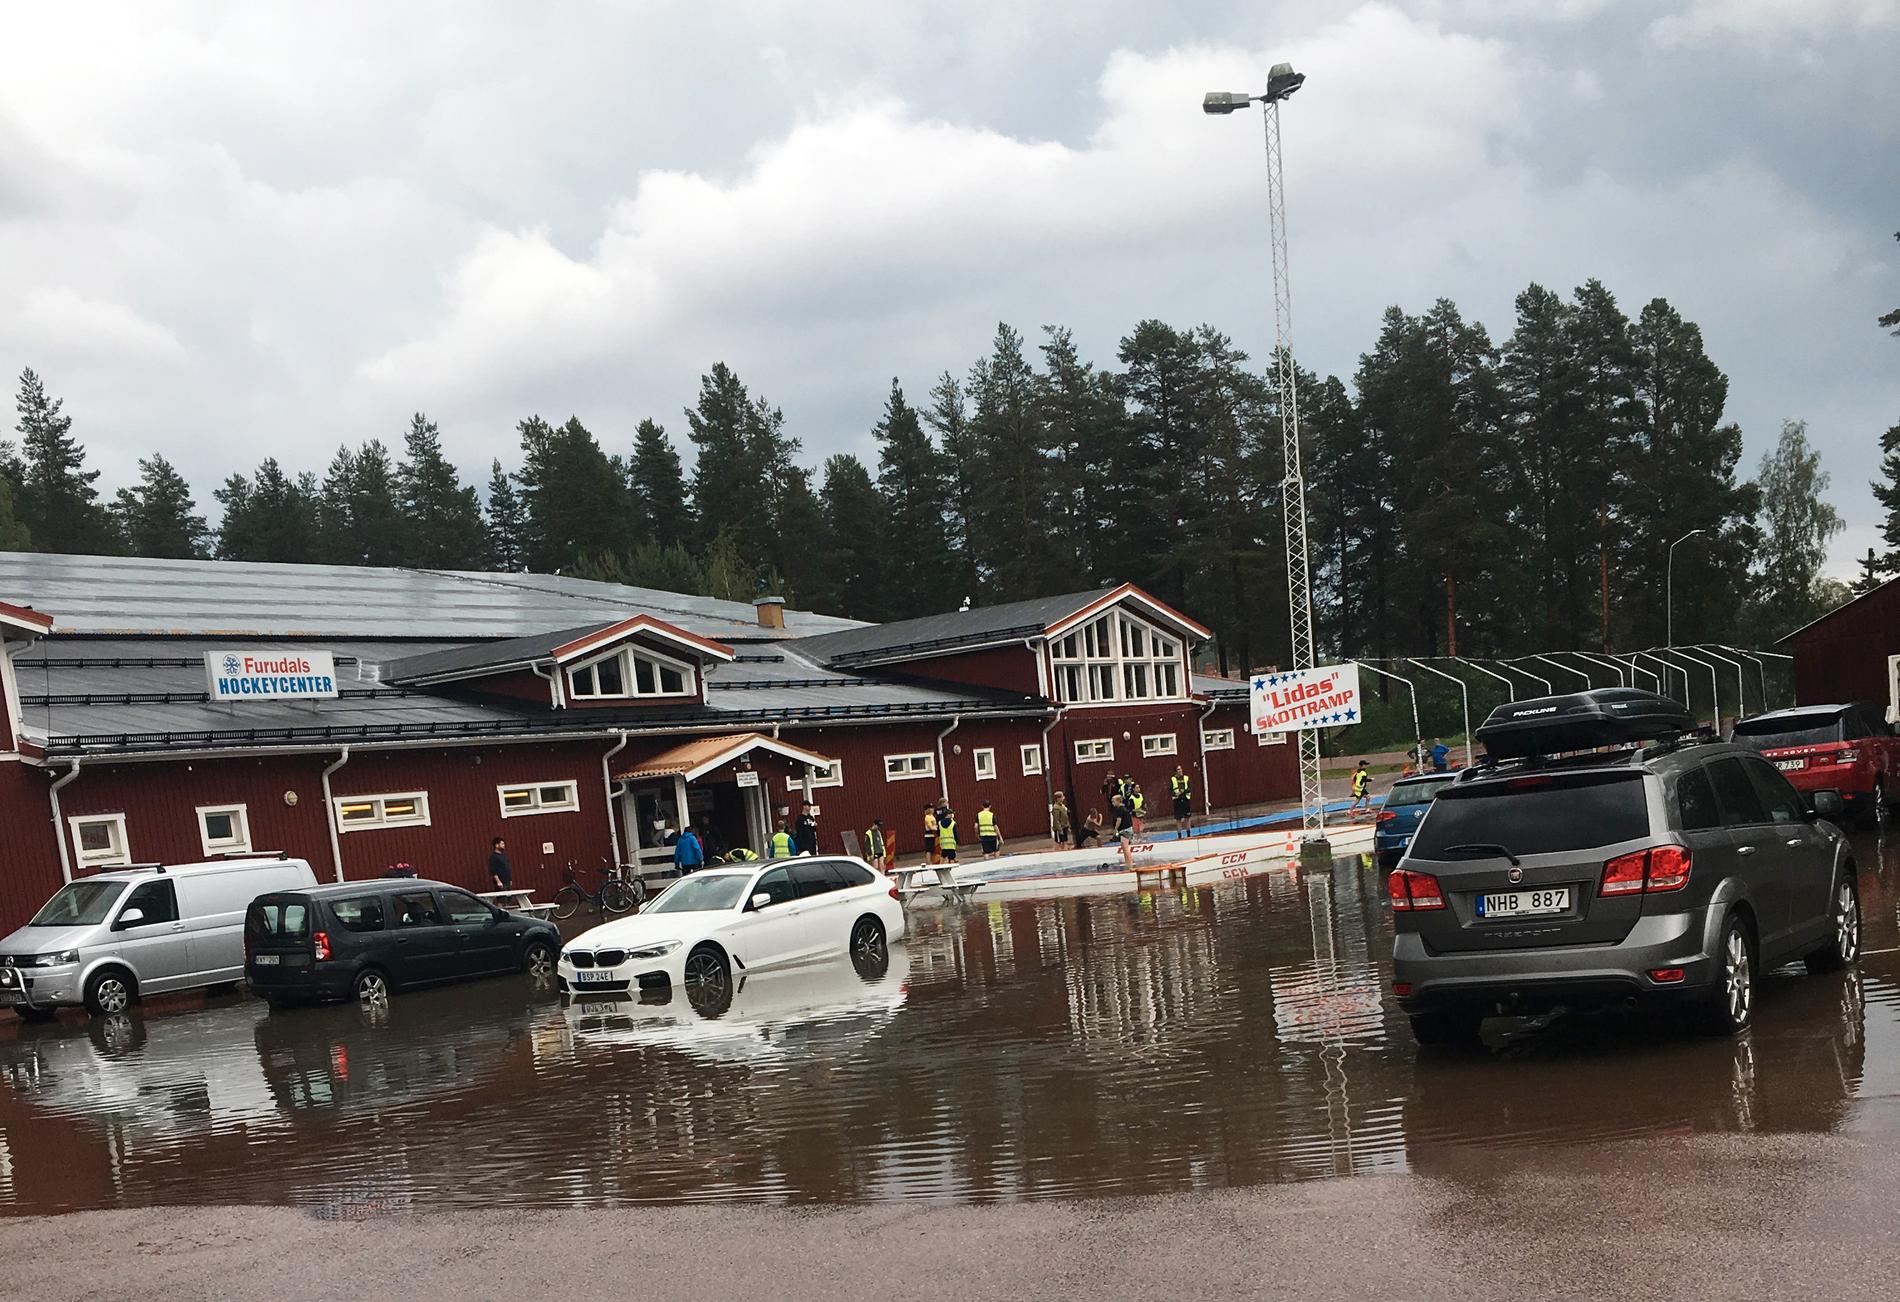 Skyfall över sommarhockeyskolan i Furudal. Helt plötsligt börjar det åska och det kom en väldans skur som gjorde att det blev stopp i vattenbrunnarna och hela parkeringen blev ett bad, säger vittne.